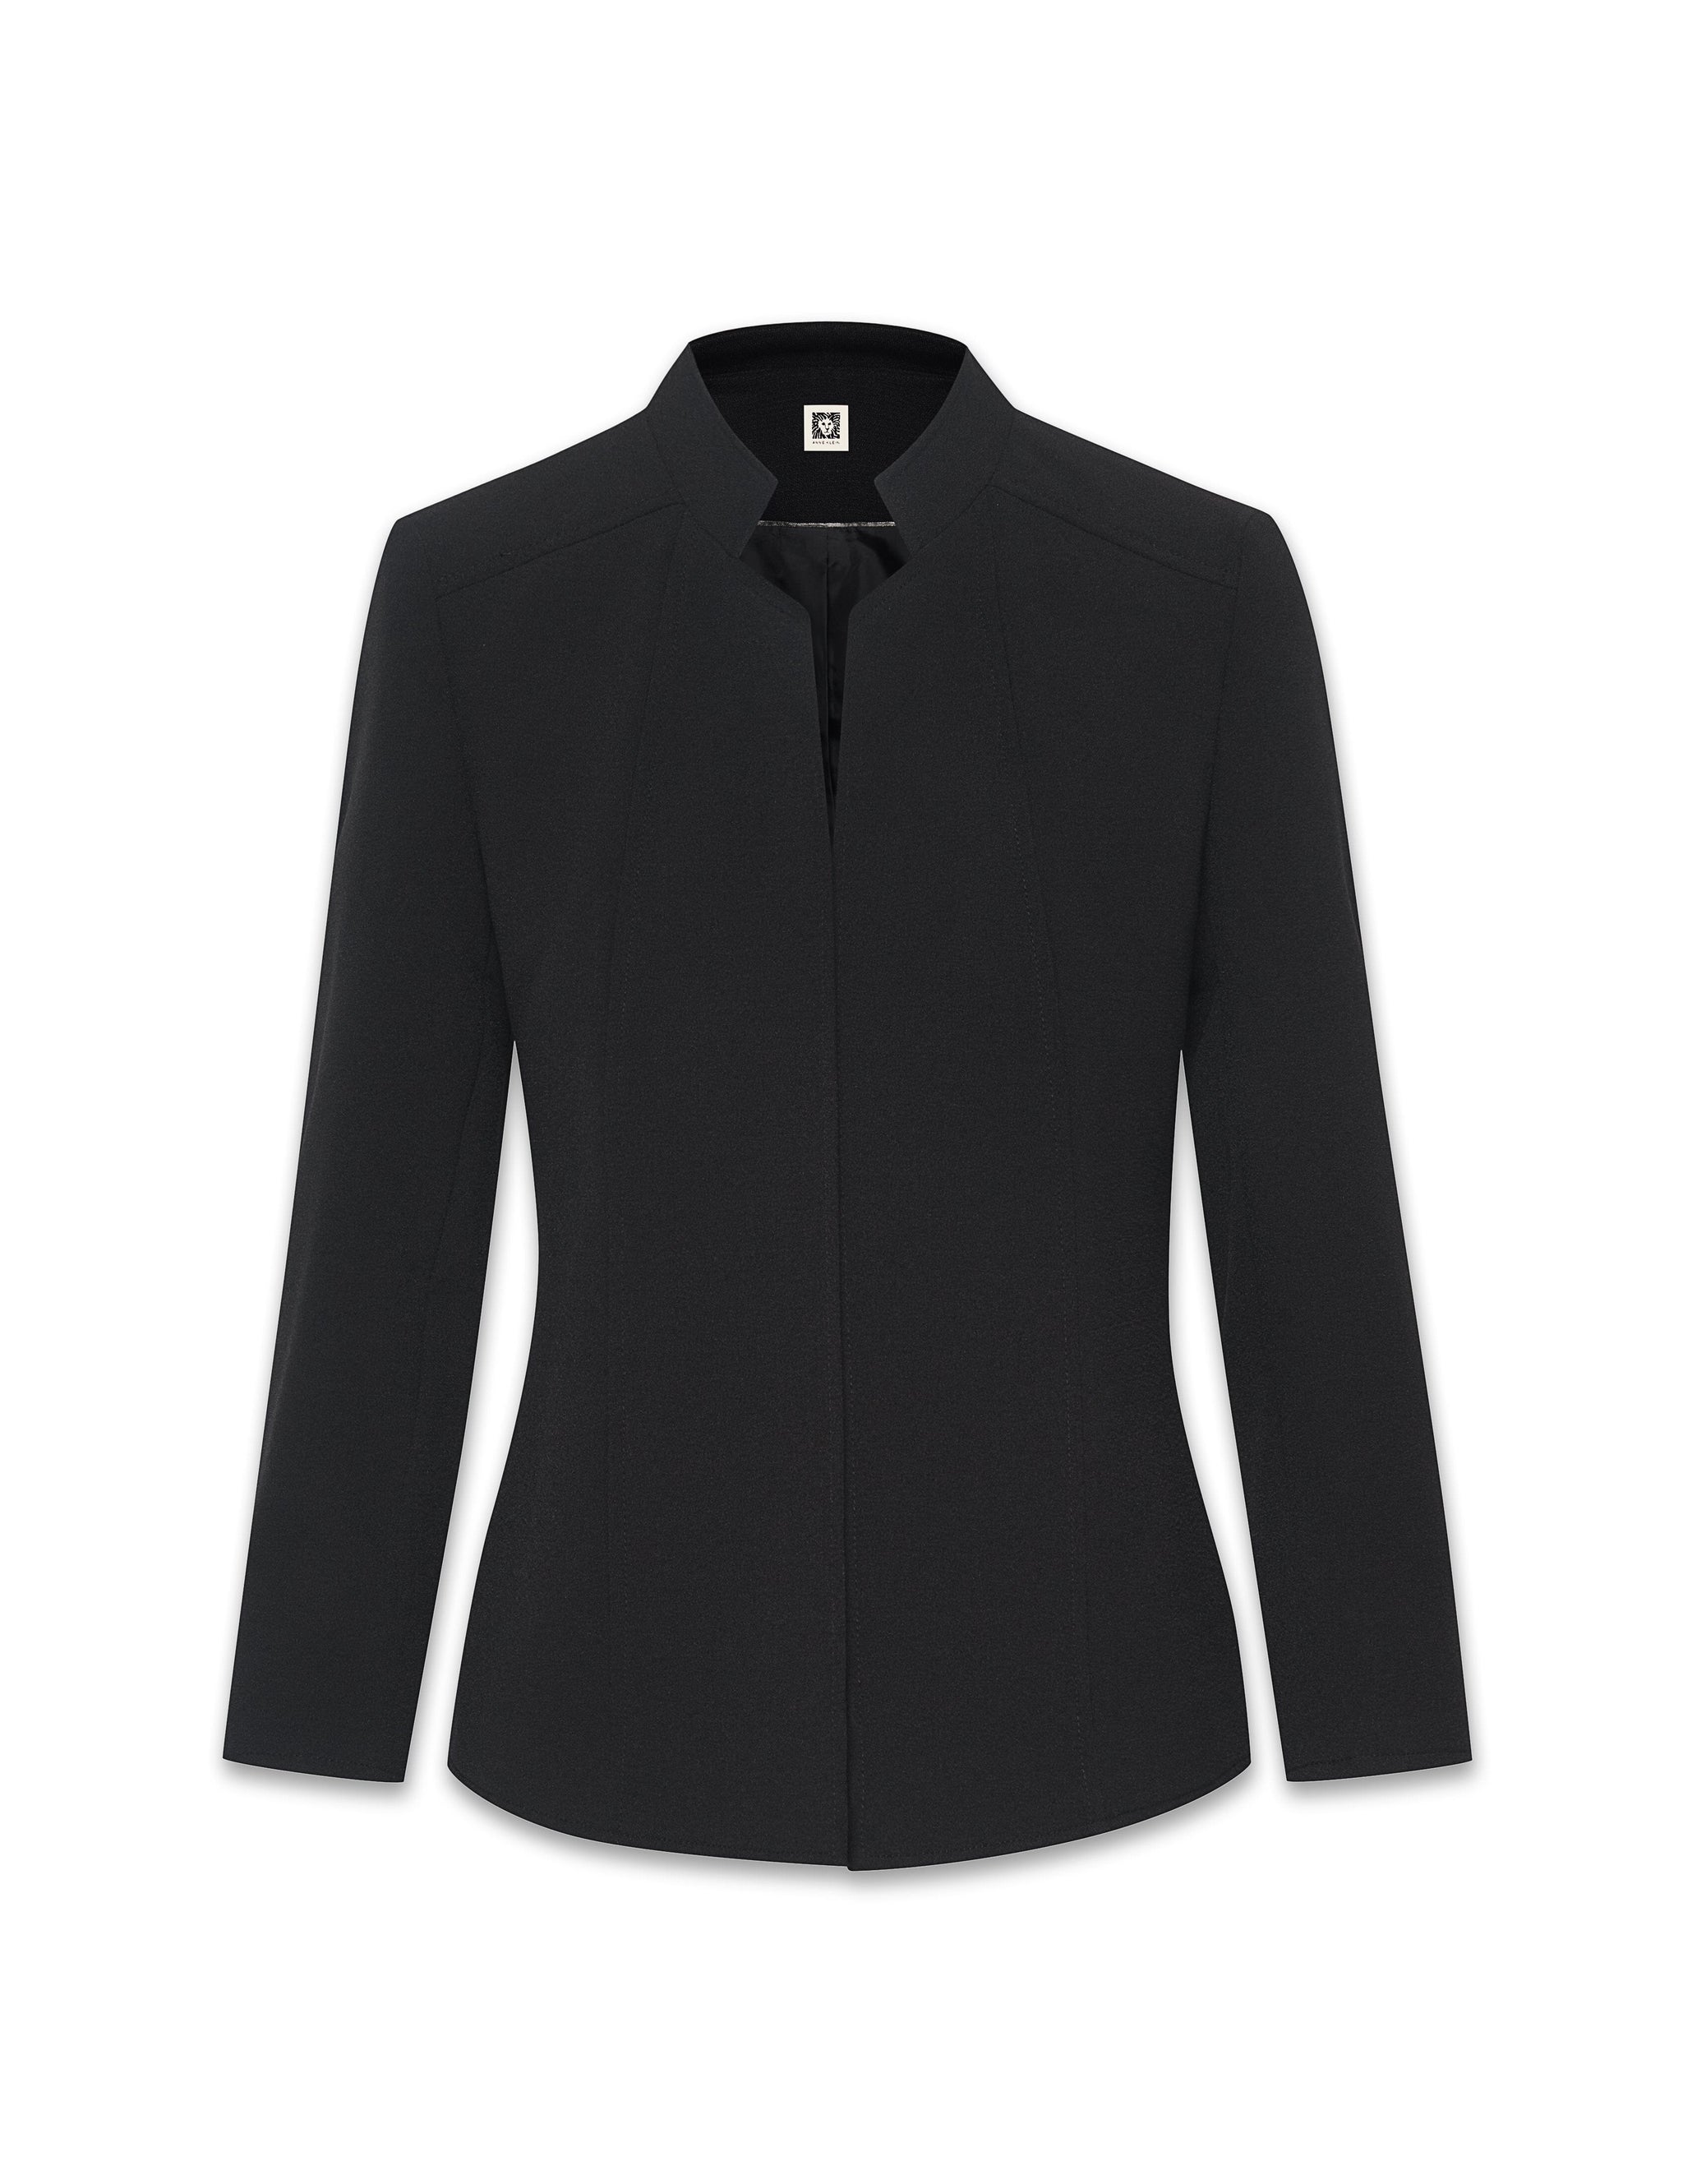 Anne Klein Zinc/Black Melange 2 Button Jacket